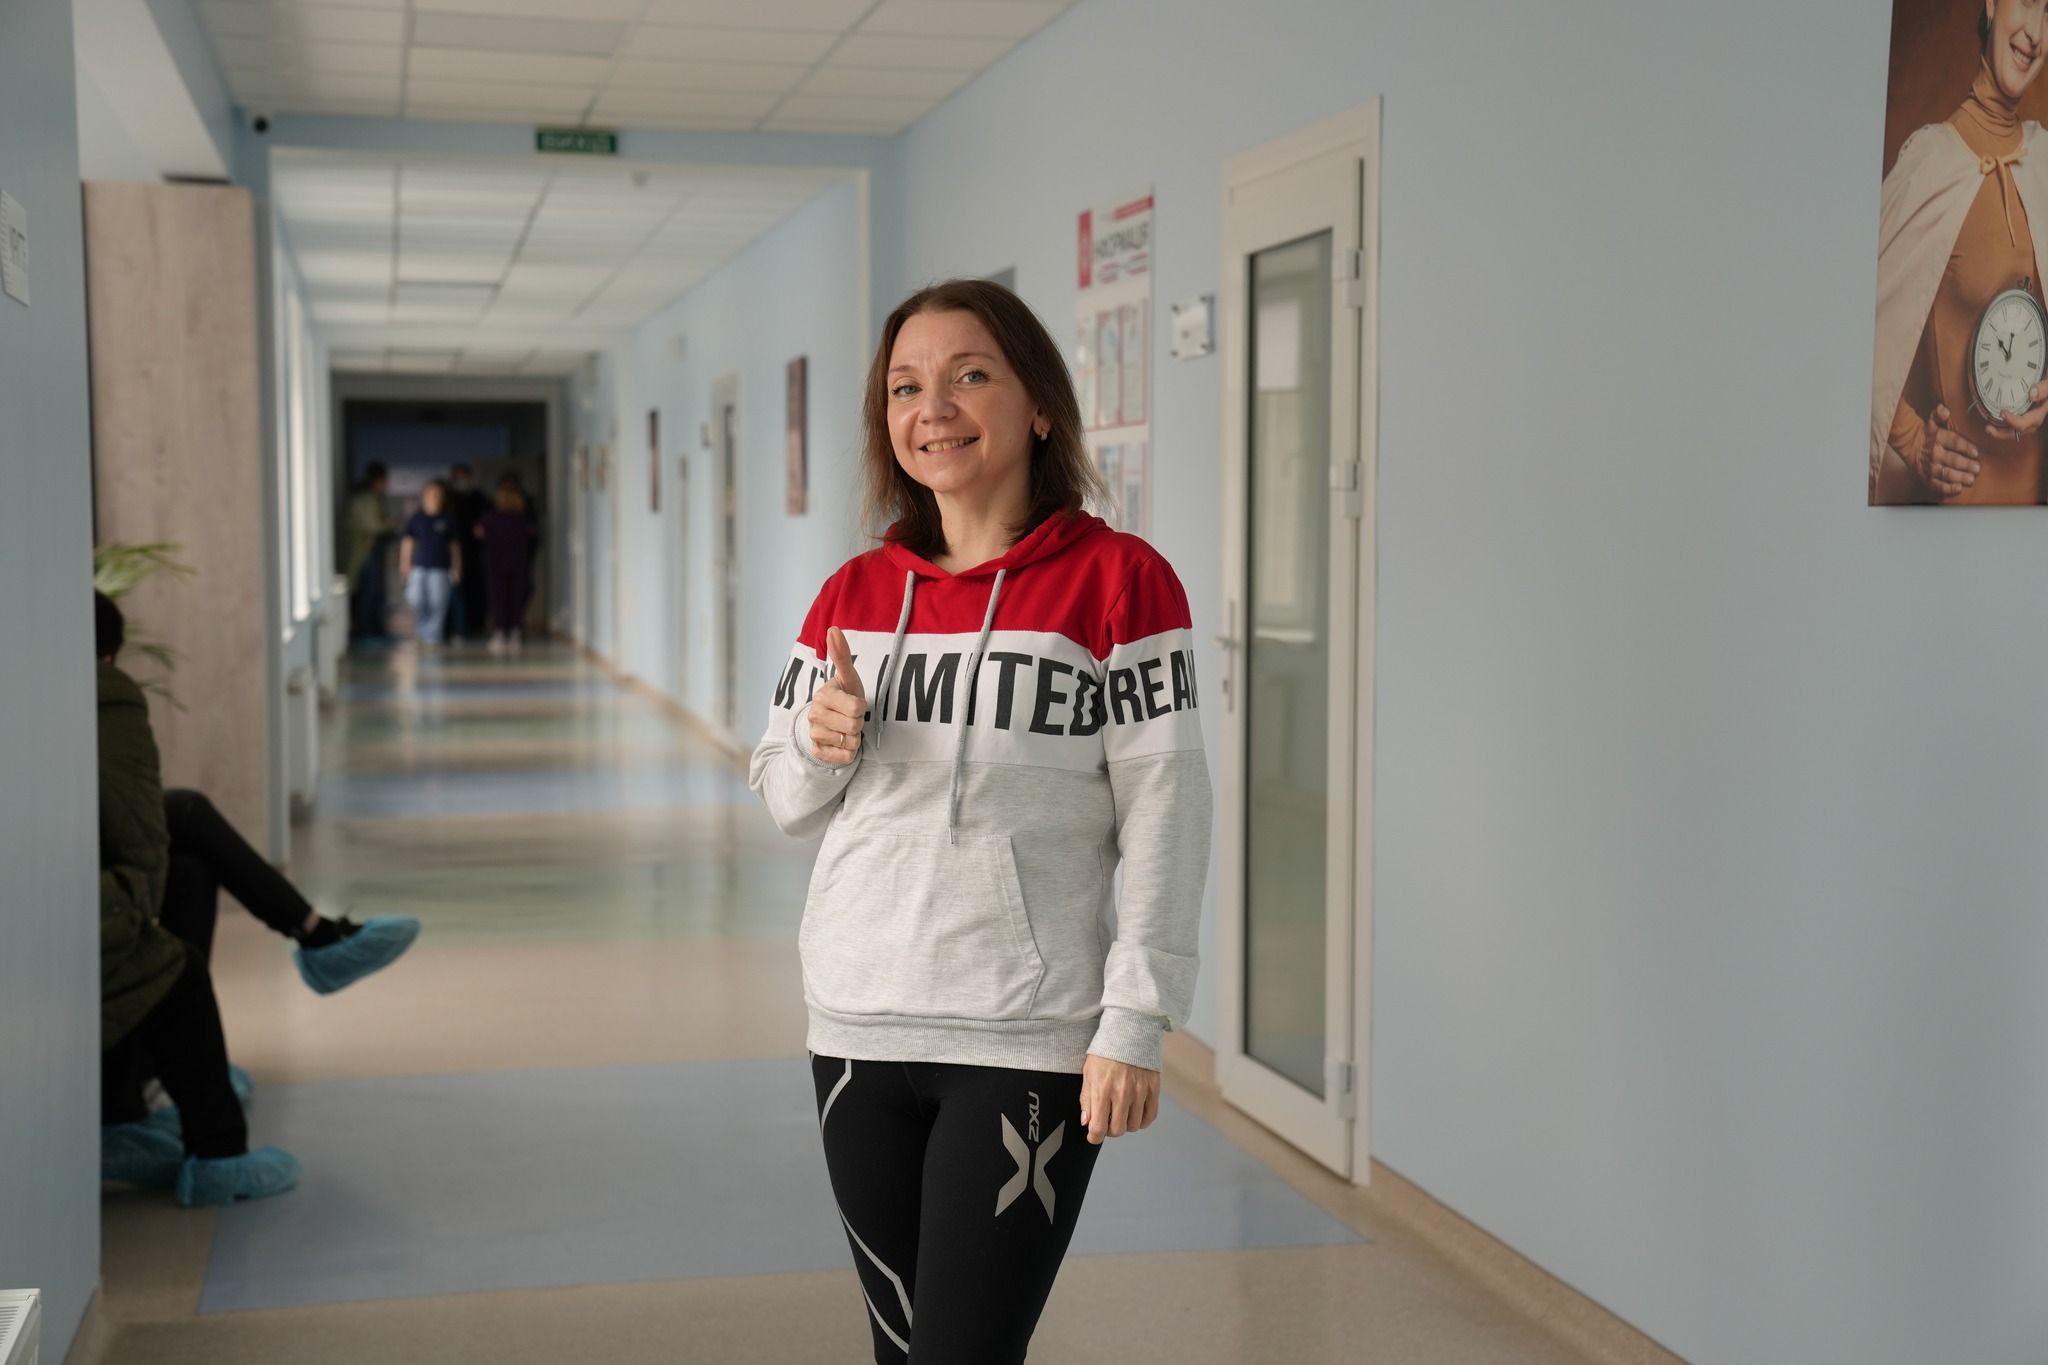 Четверта нирка: у  Львові 39-річній жінці зробили унікальну операція, фото